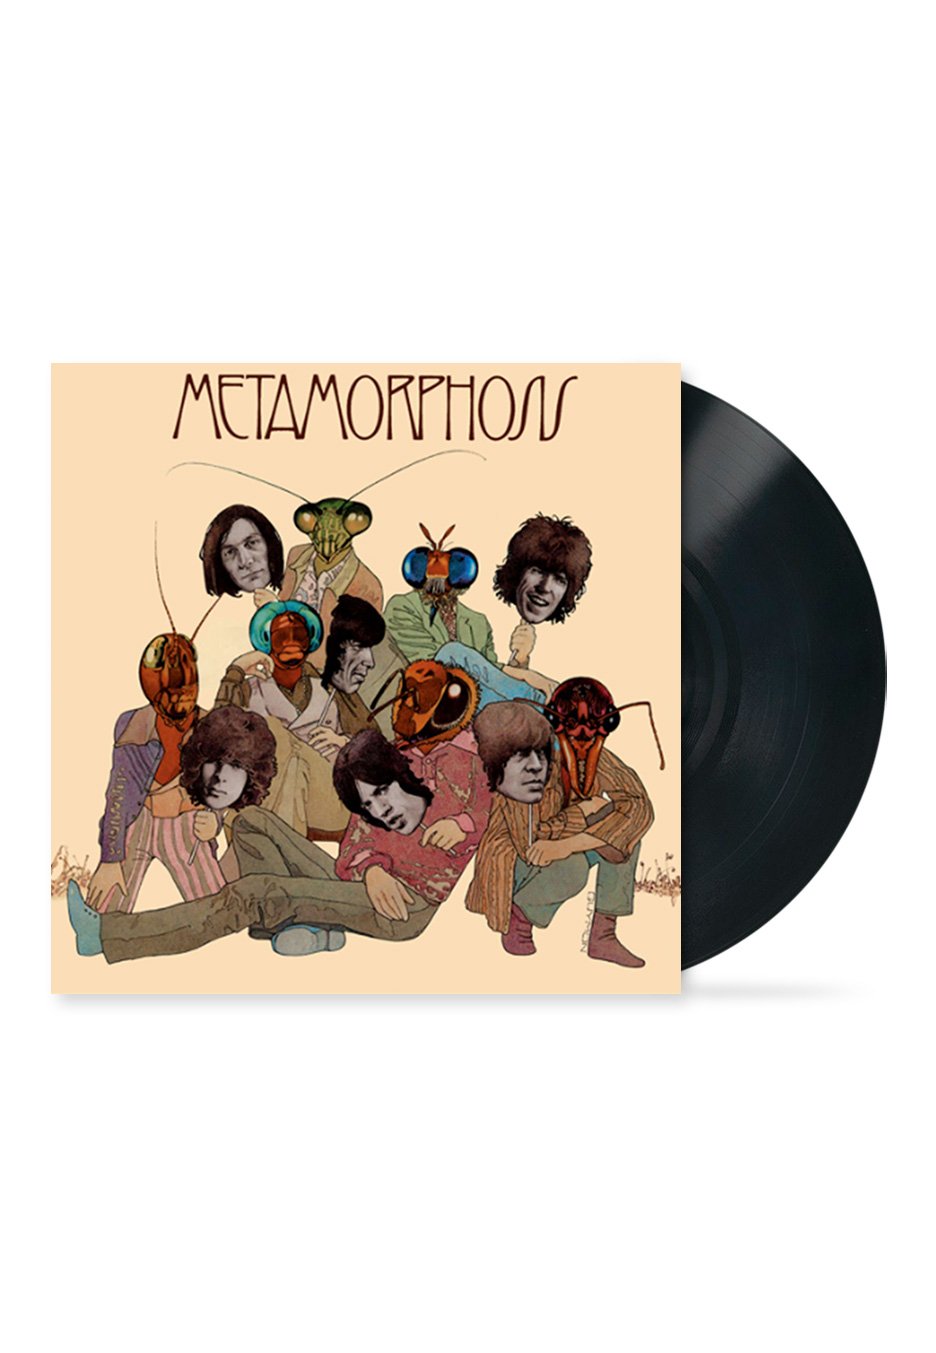 The Rolling Stones - Metamorphosis - Vinyl